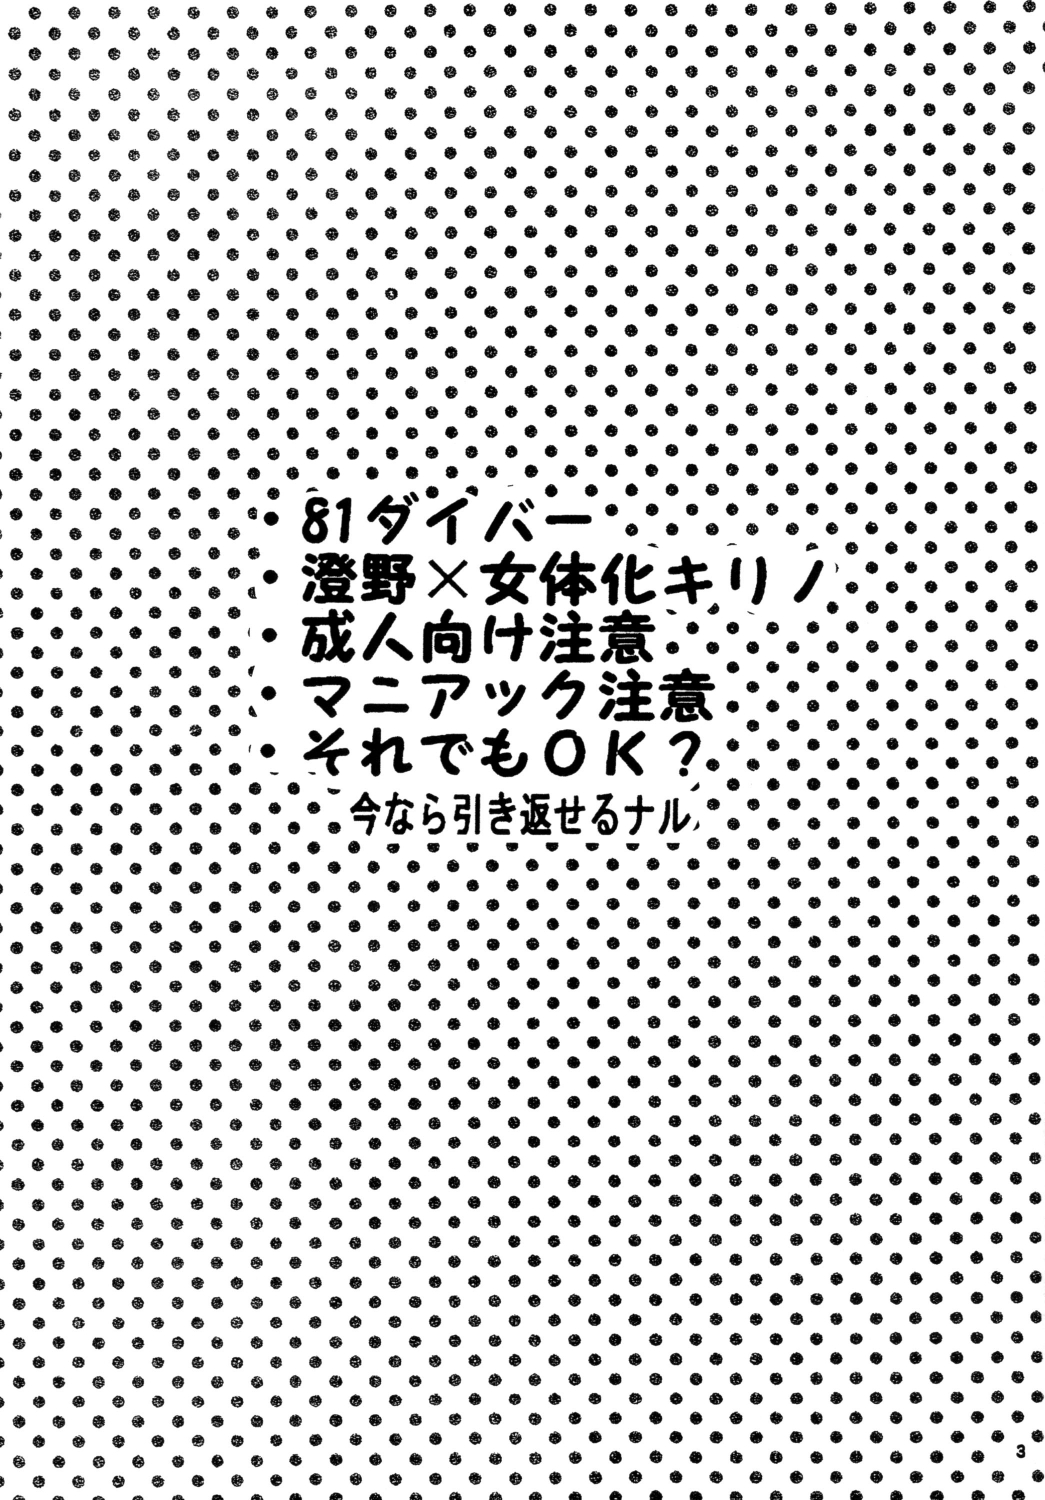 [Takenoko] Daitai de Ireteru (81(Hachi-wan) Diver) [たけのこ] だいたいで挿入れてる (81ダイバー)